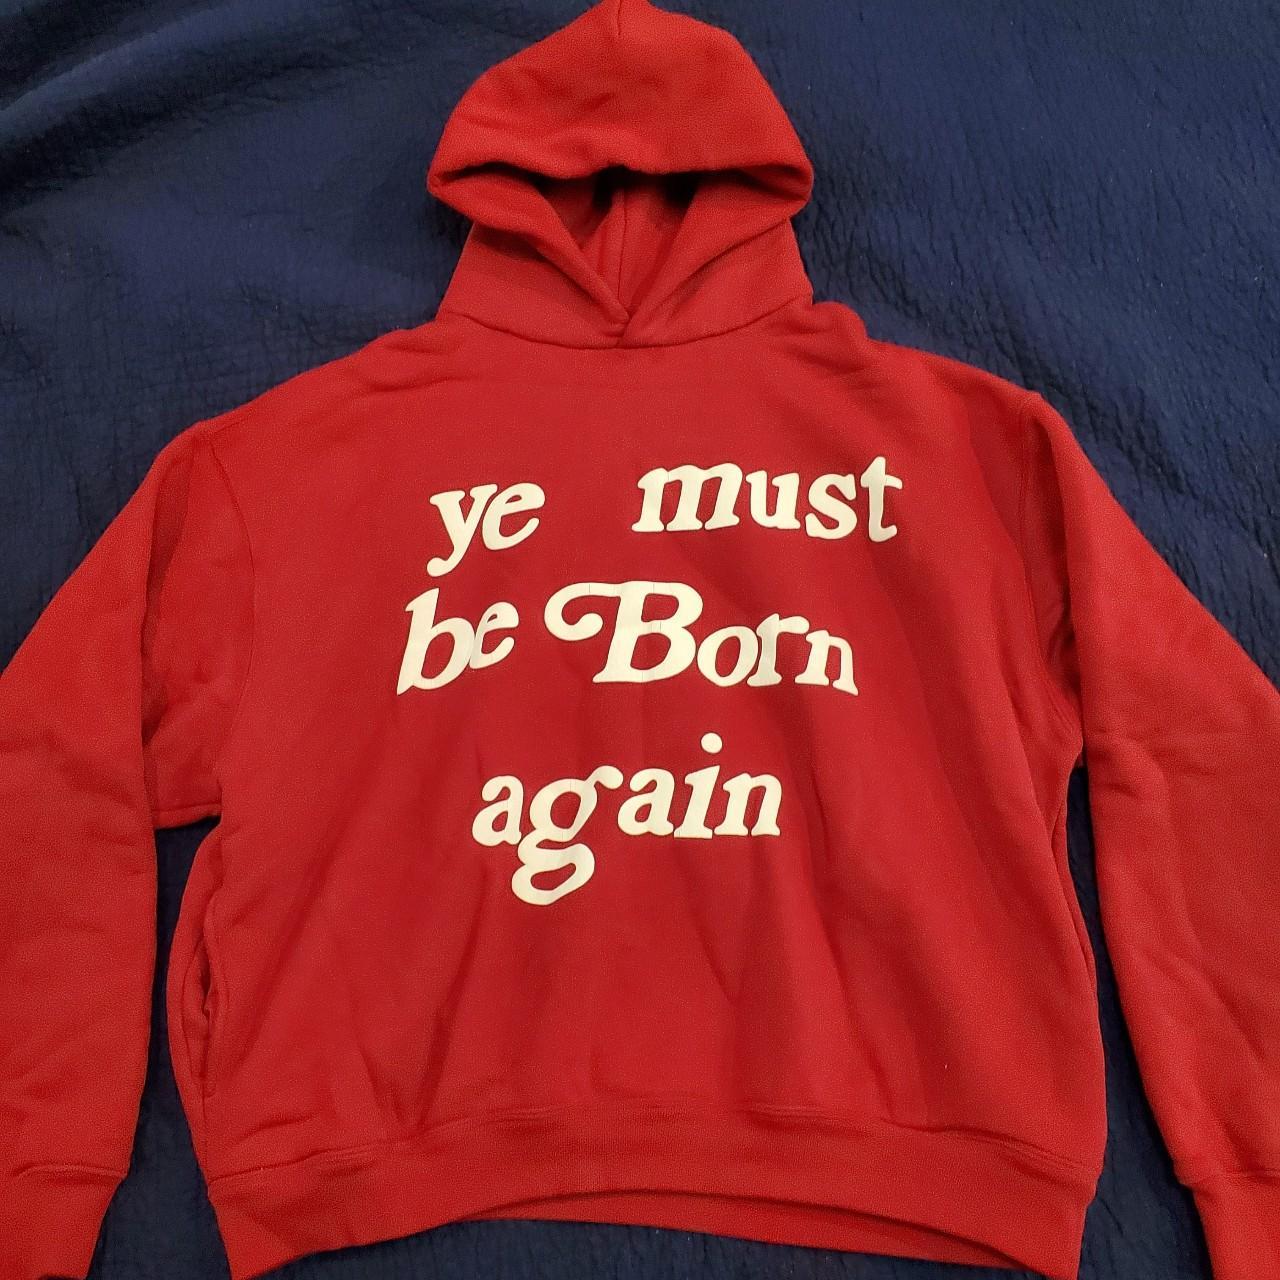 Ye must be born again hoodie - CPFM Store